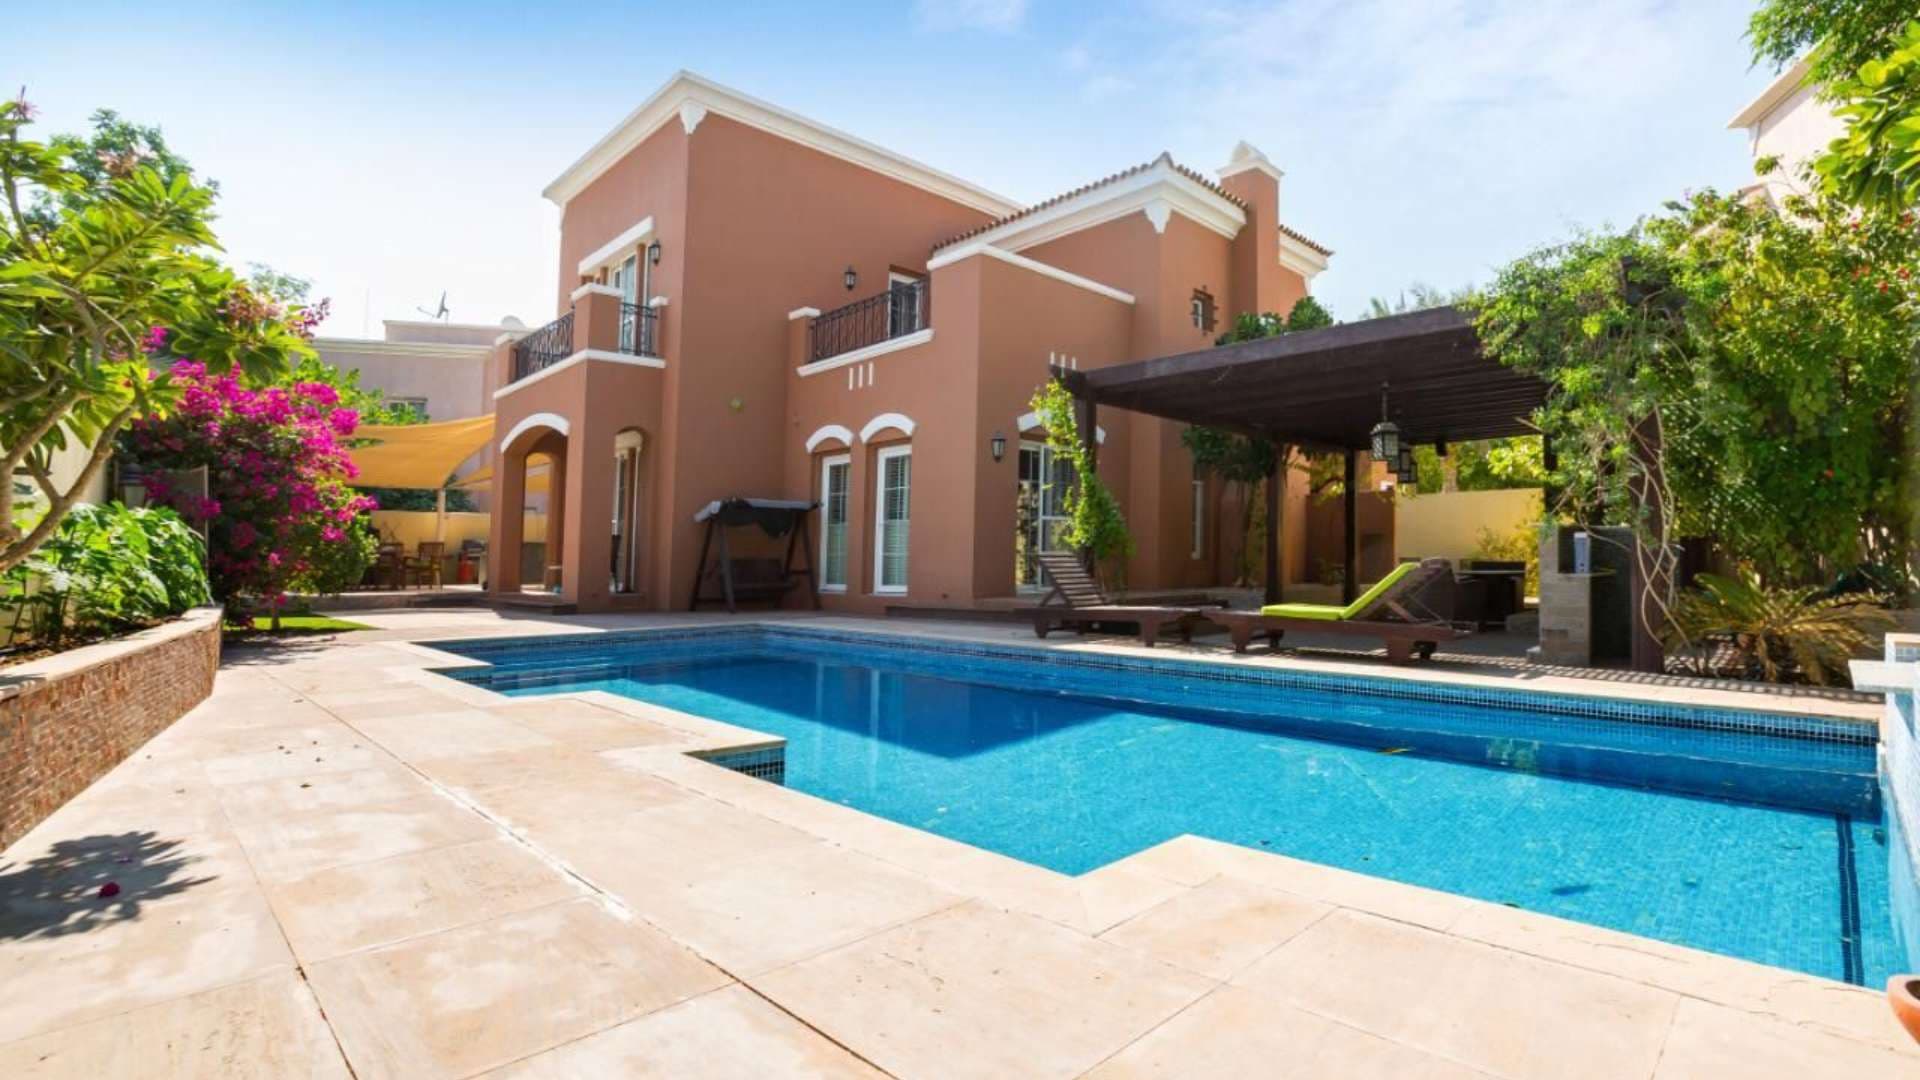 5 Bedroom Villa For Sale Mirador Lp08168 16c275fc29ed2100.jpeg